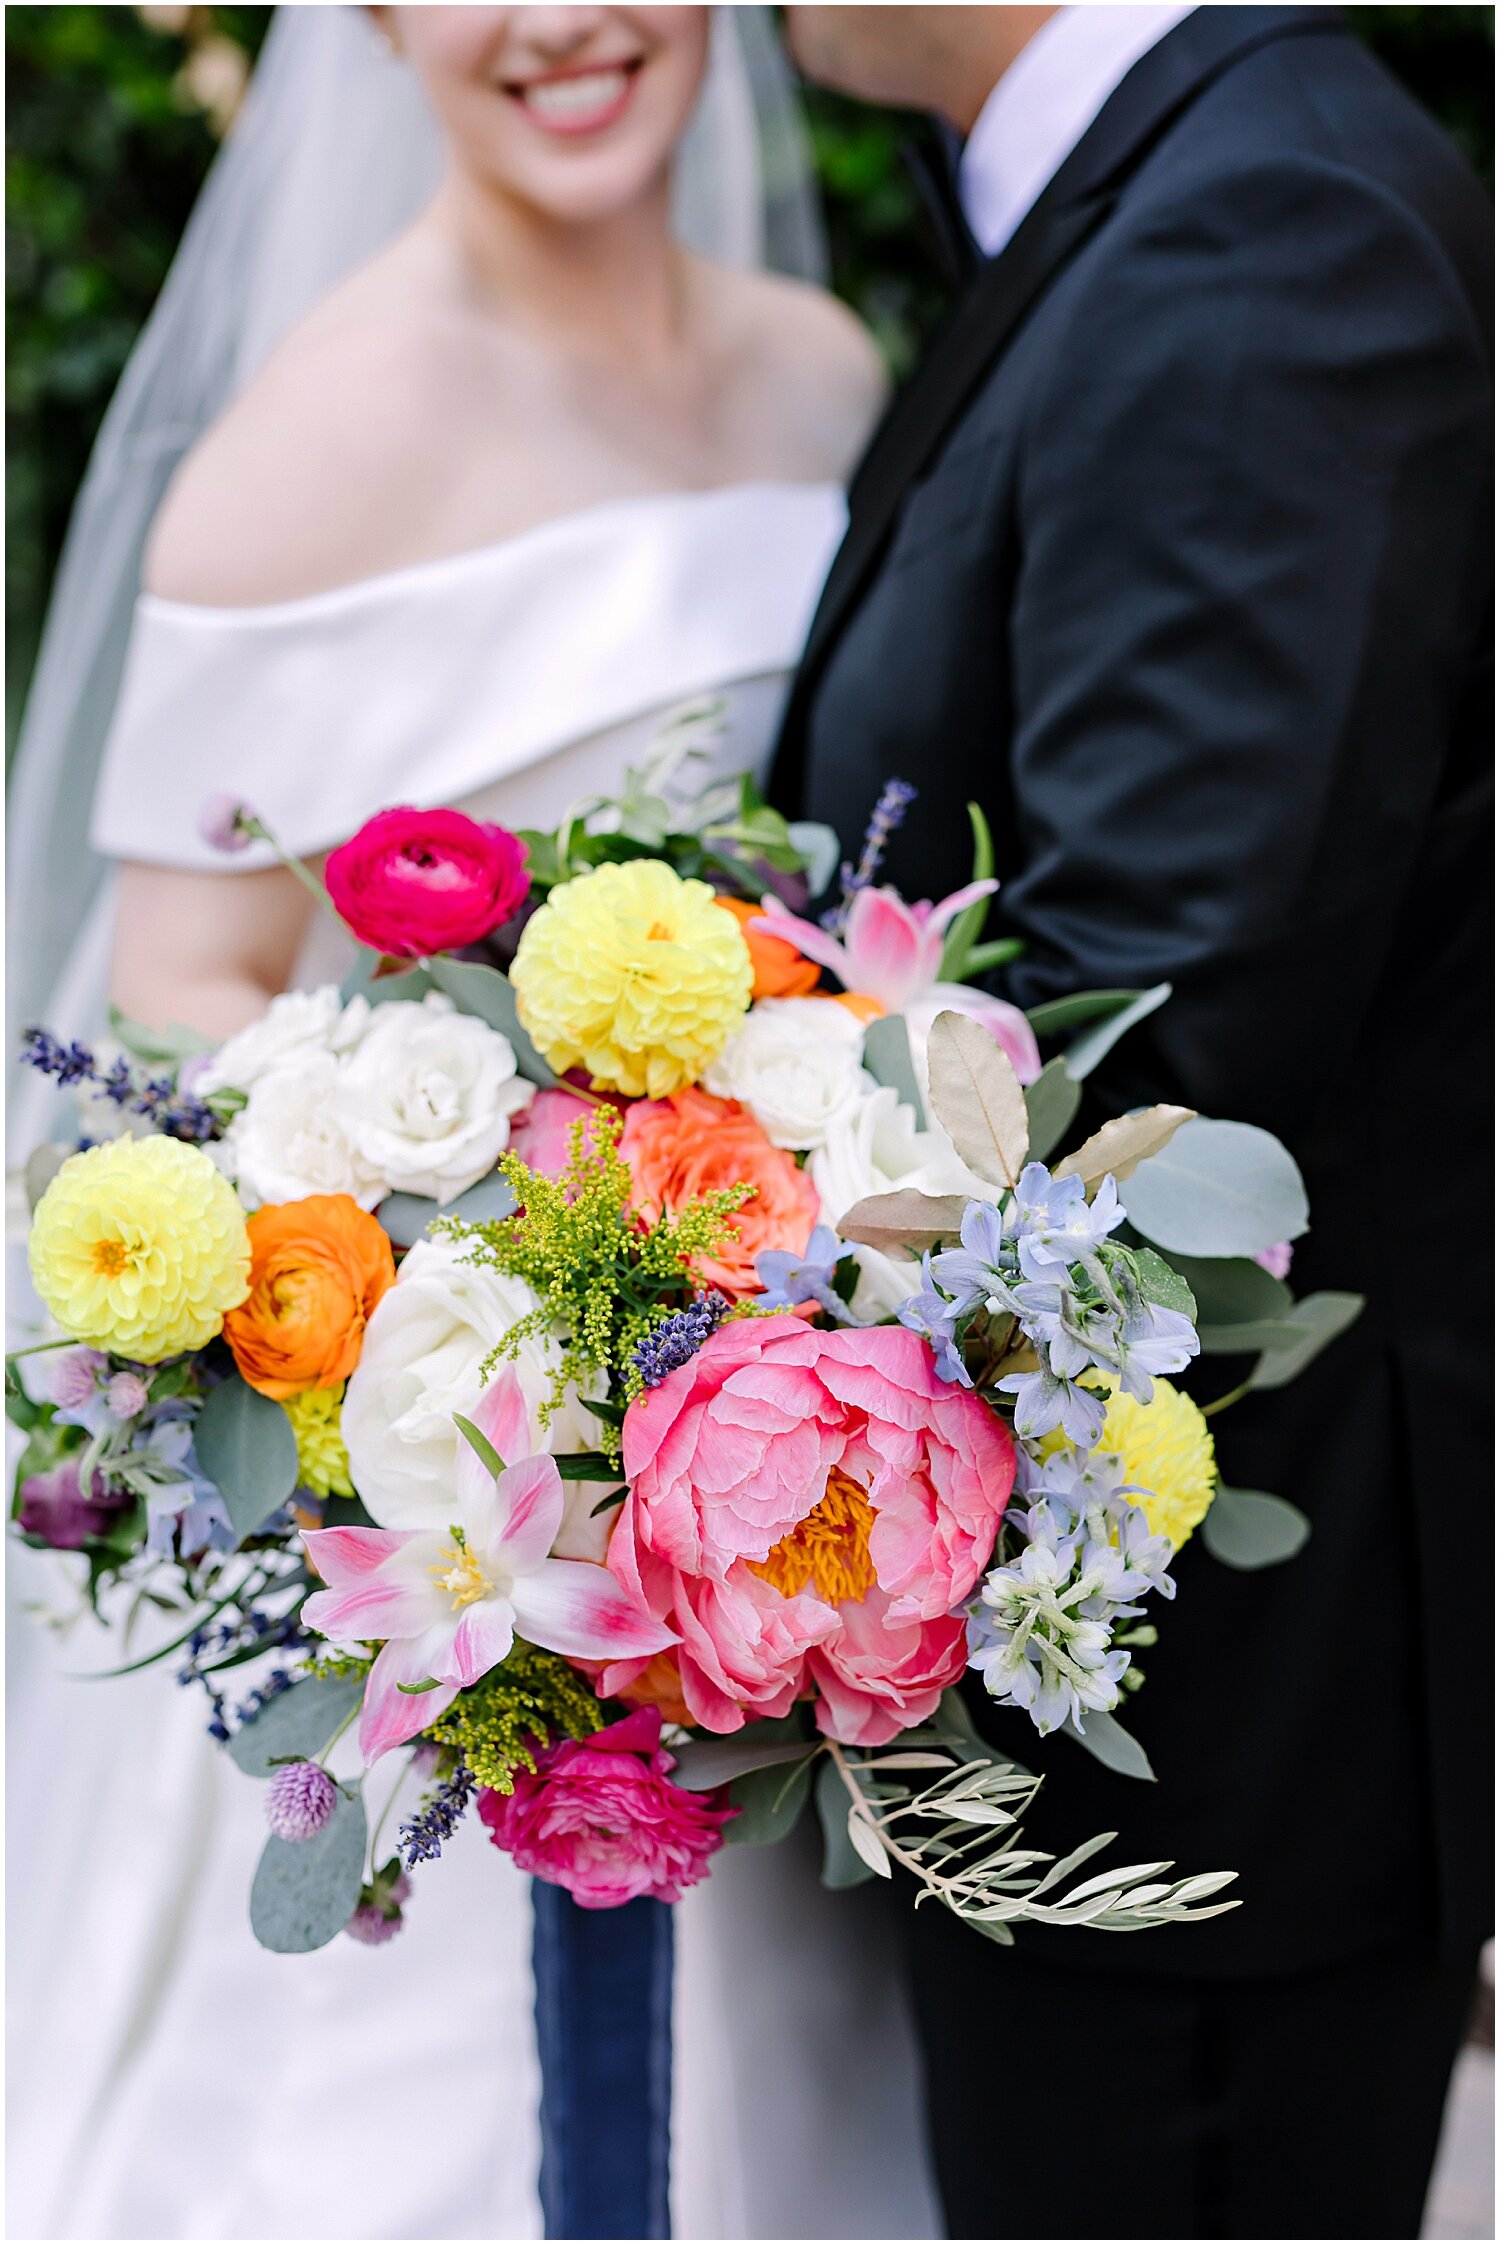  bride’s colorful wedding bouquet 